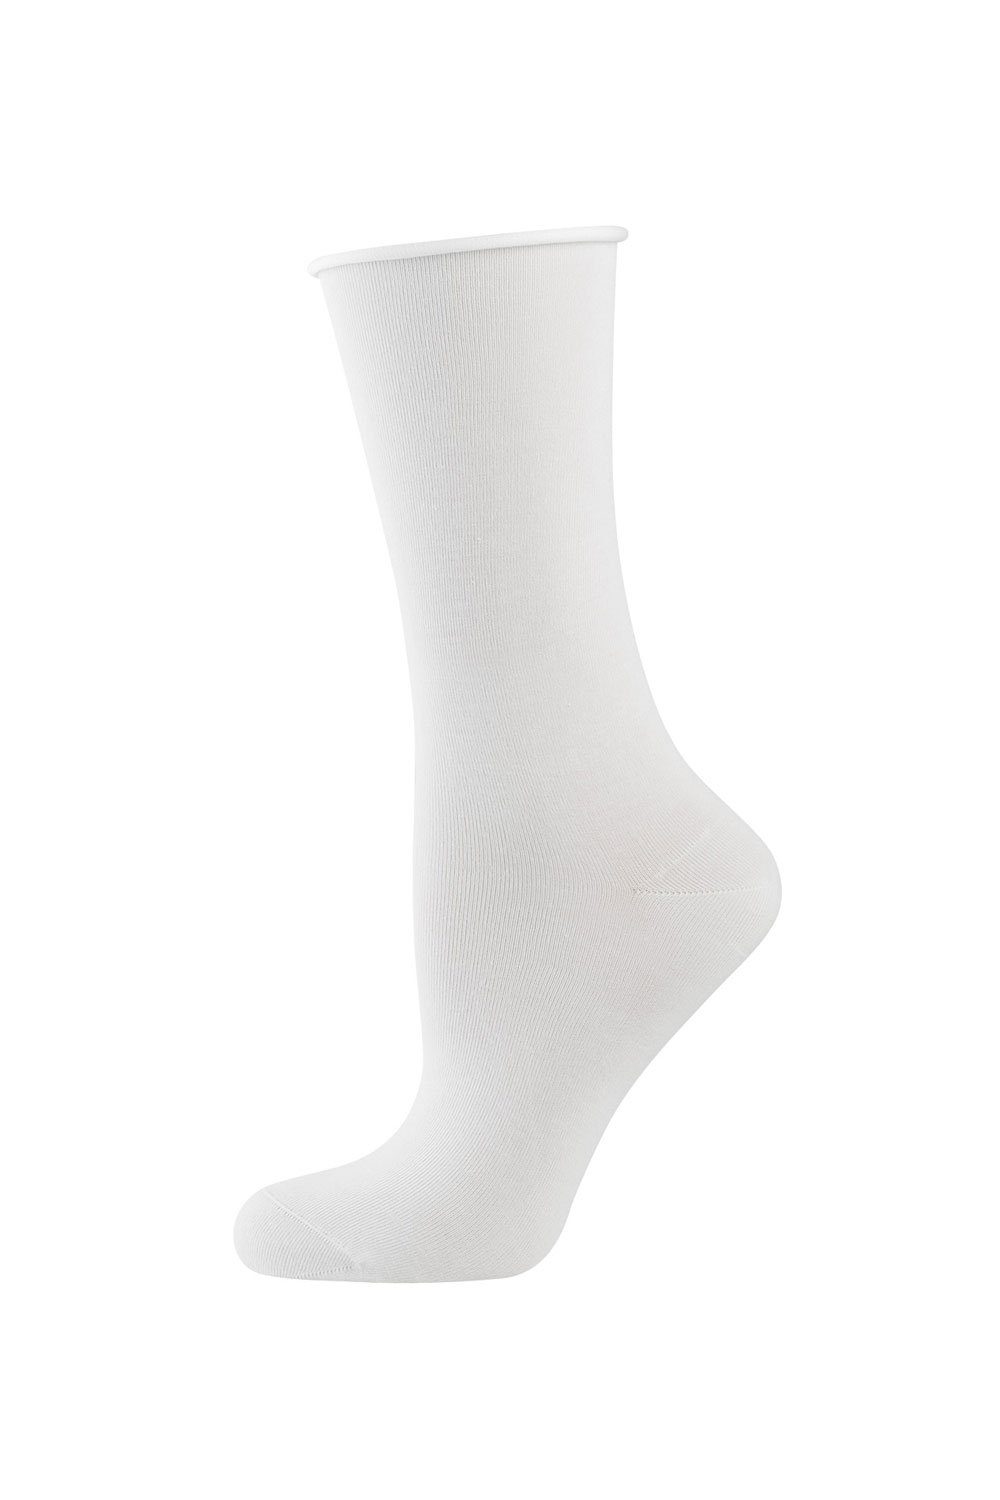 Cotton Socken Rollbund-Socken Elbeo Light weiß 938303